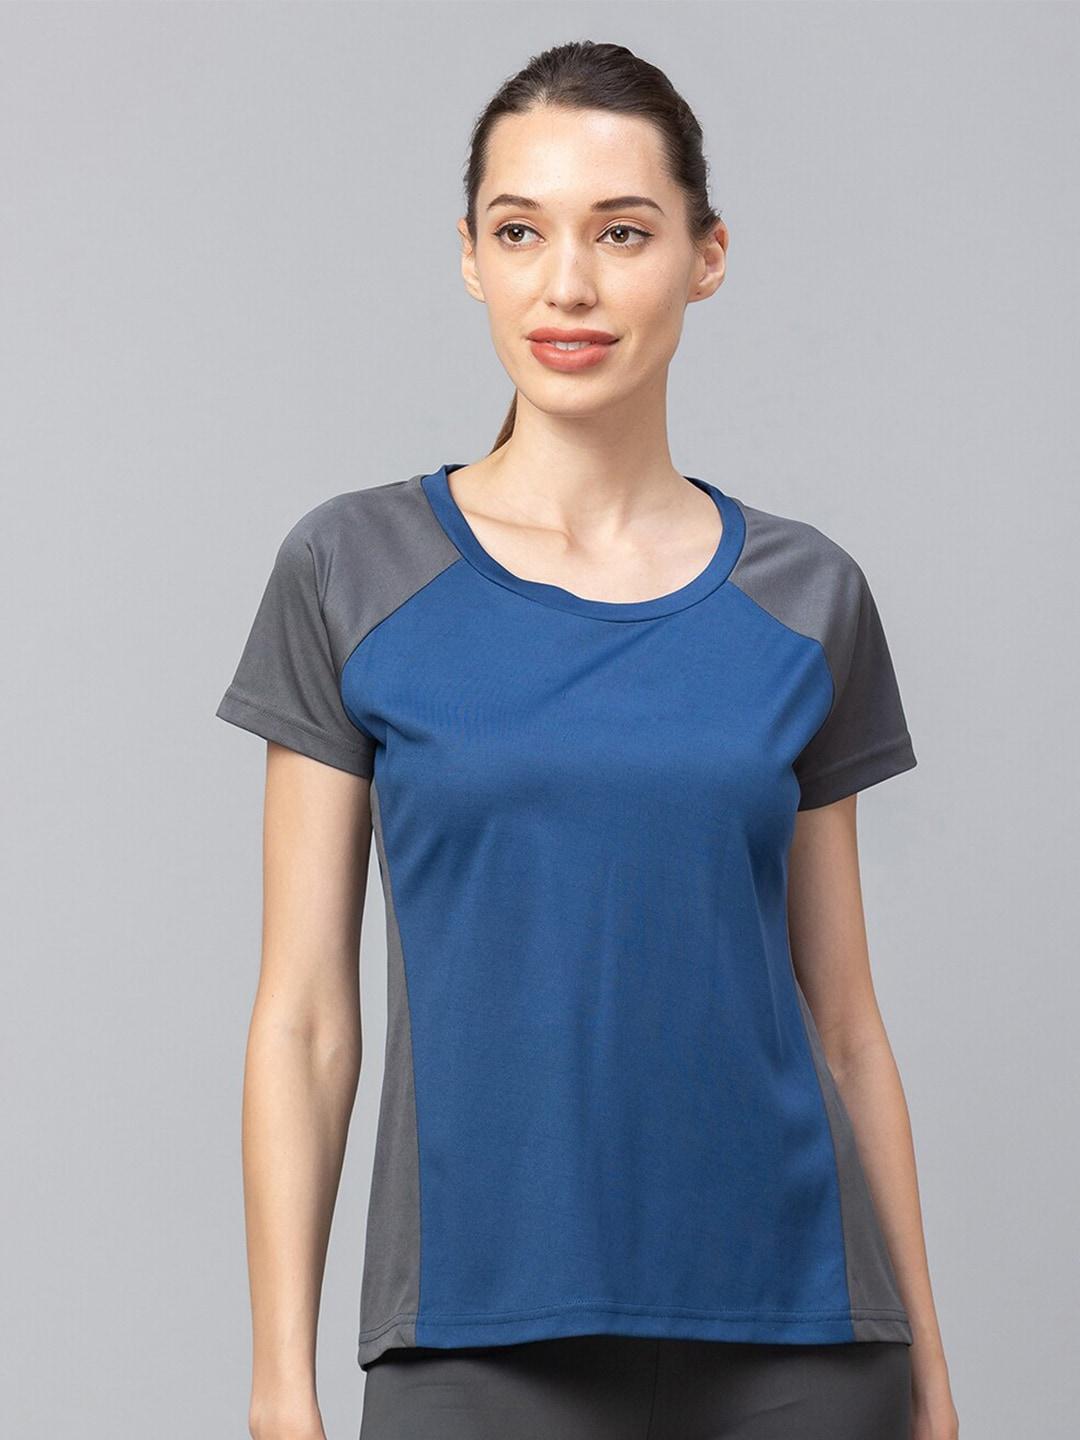 globus women blue v-neck t-shirt